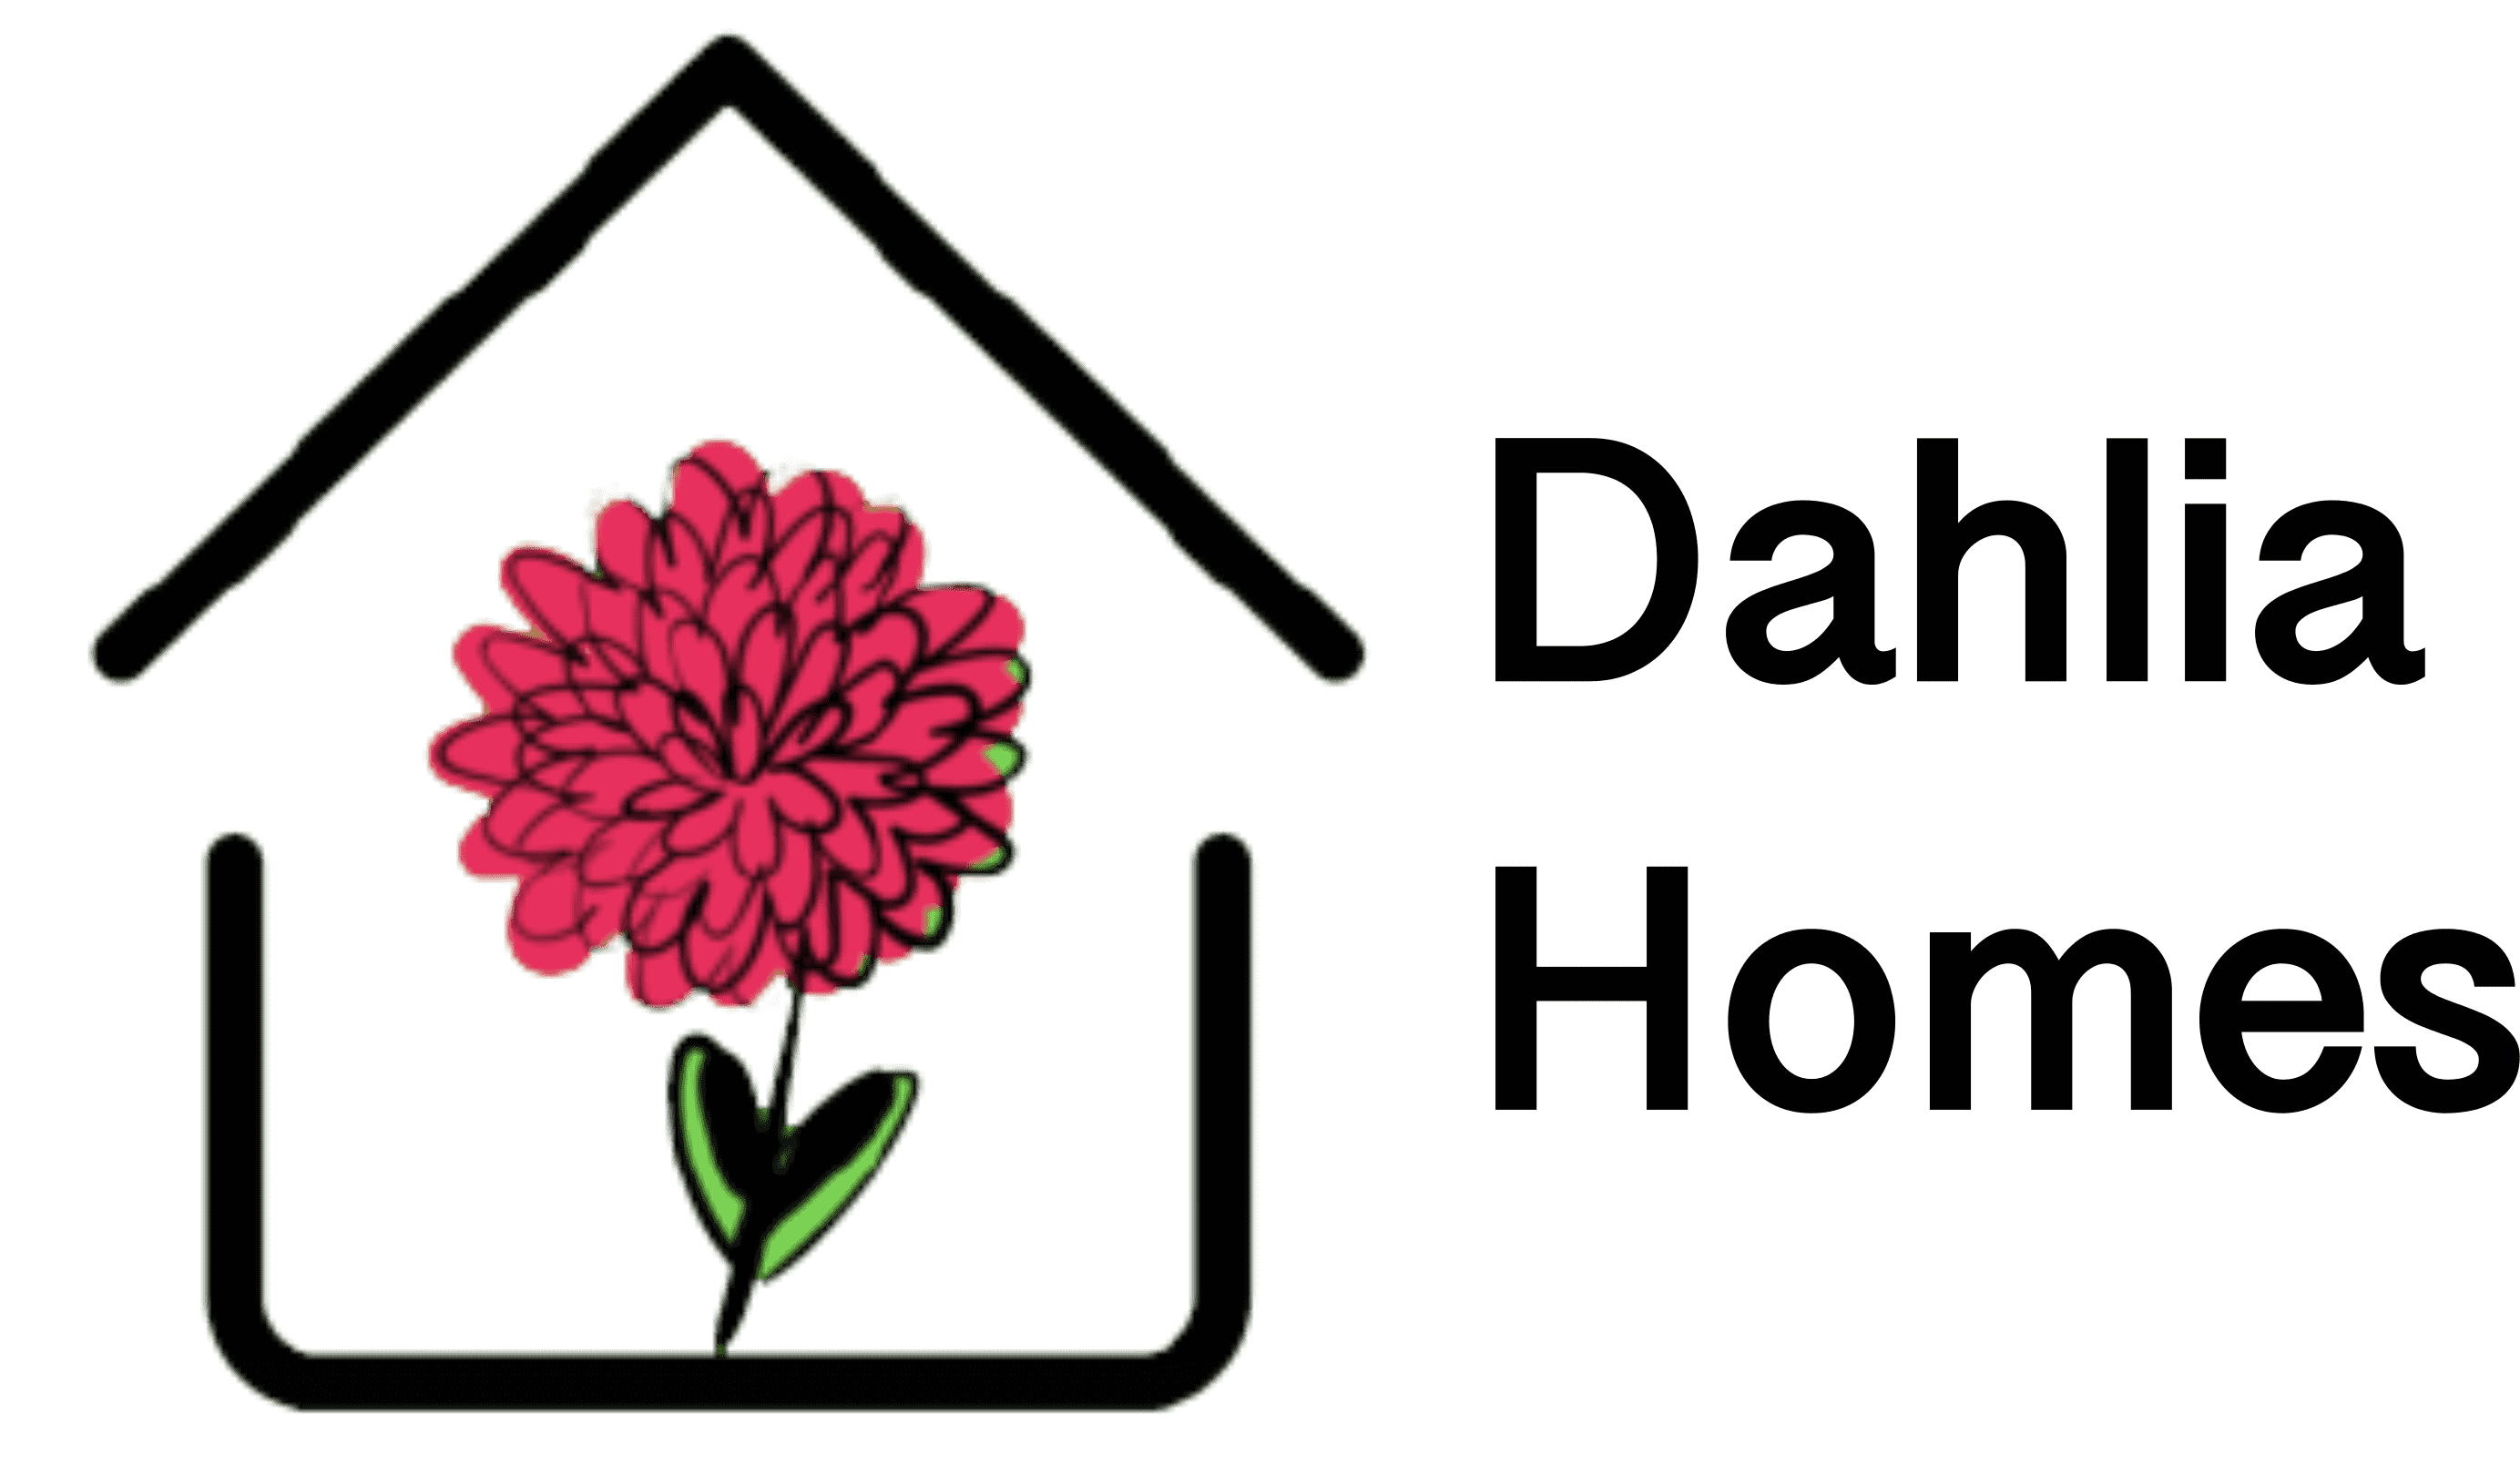 Dahlia Homes Inc.